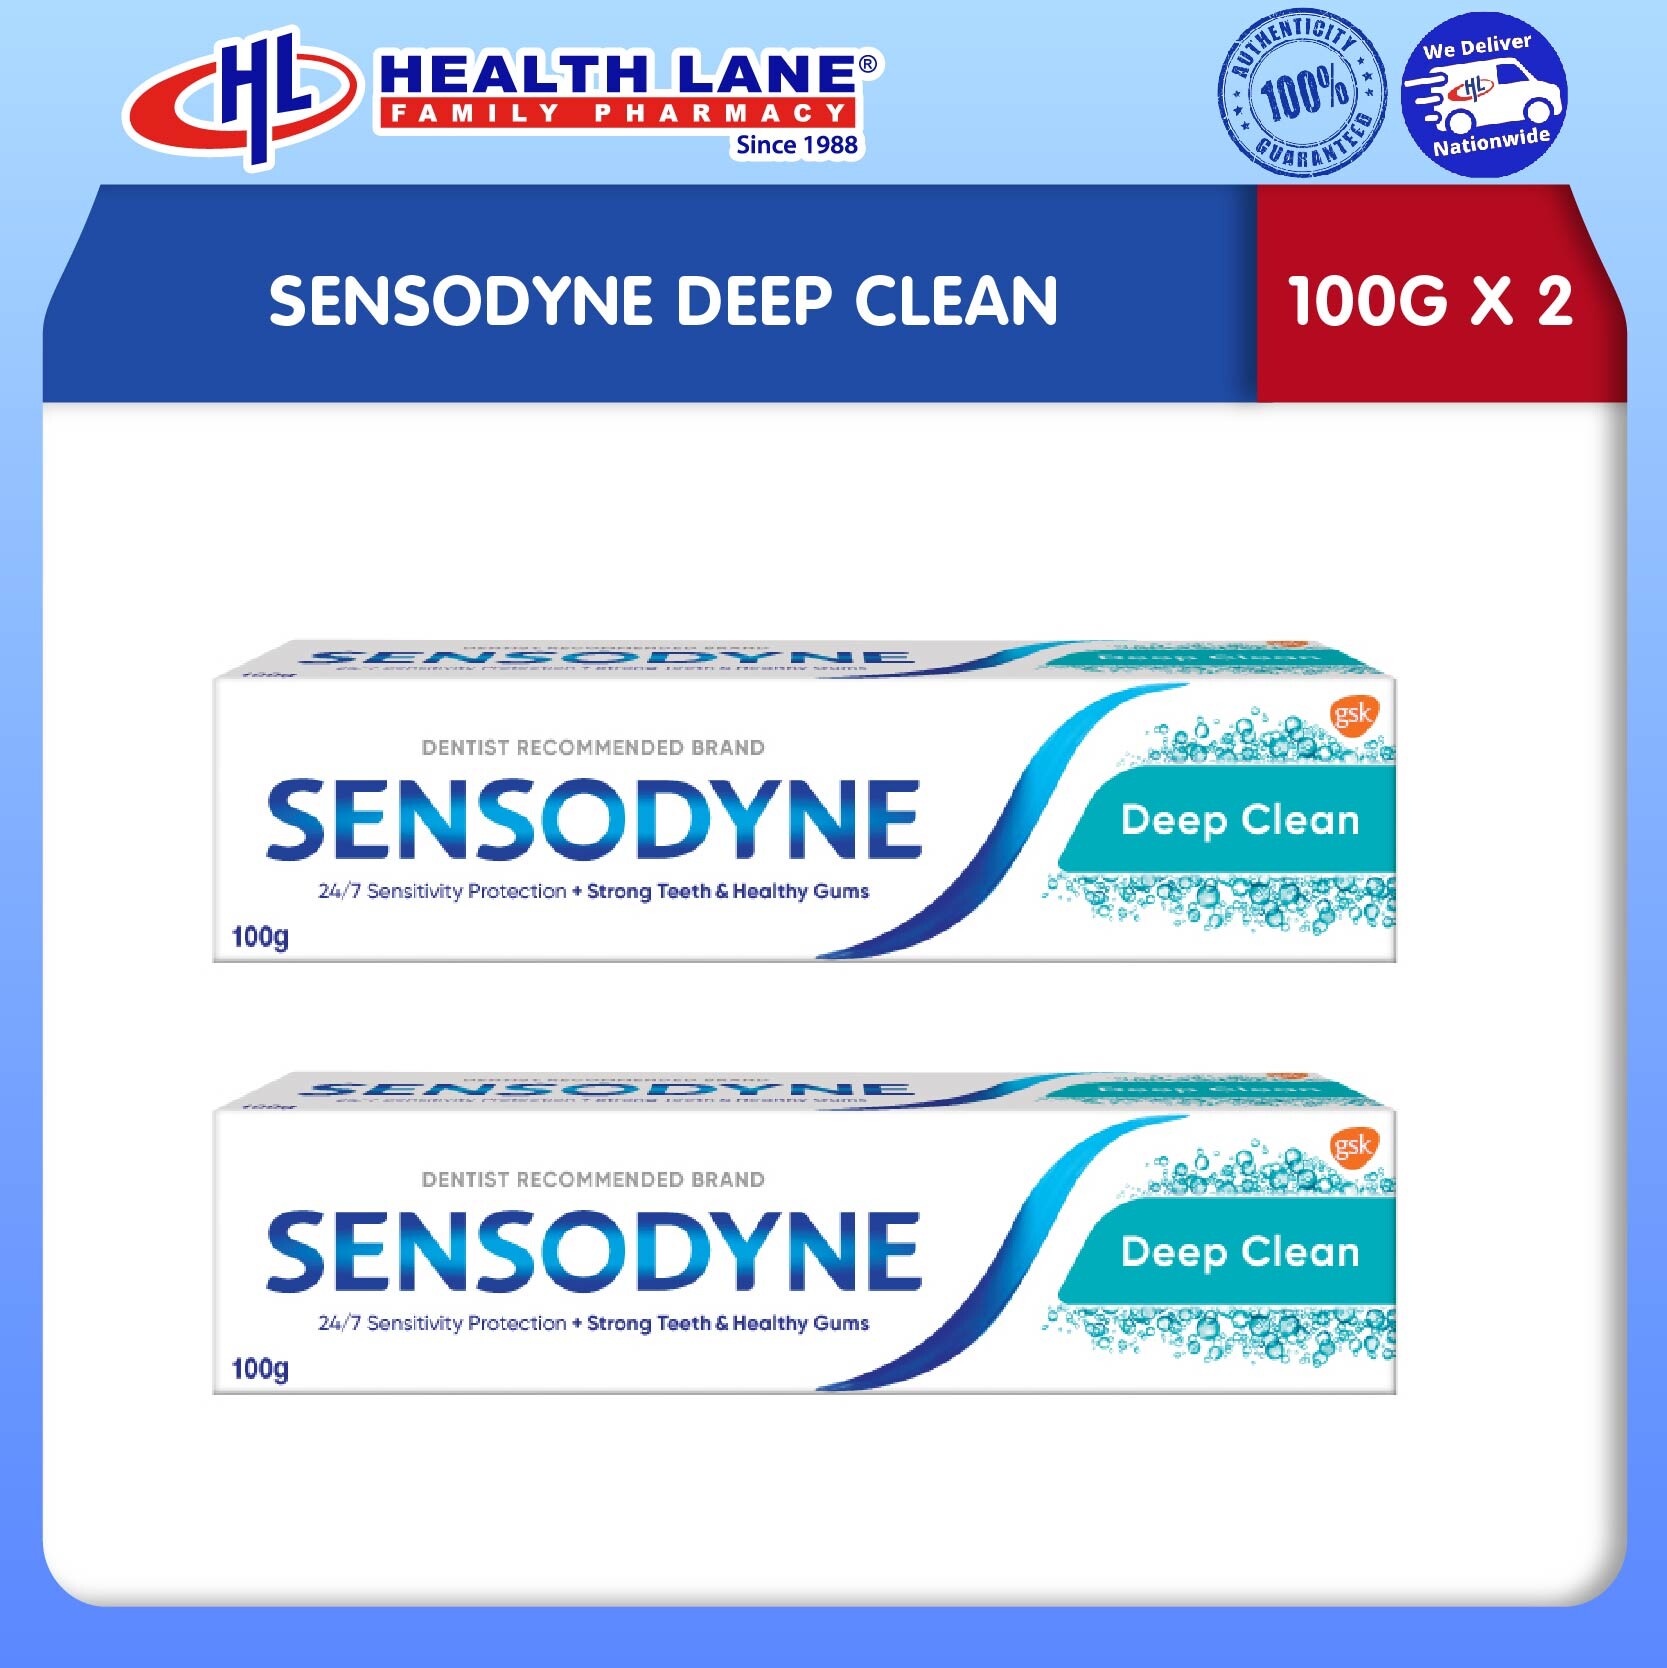 SENSODYNE DEEP CLEAN (100Gx2)